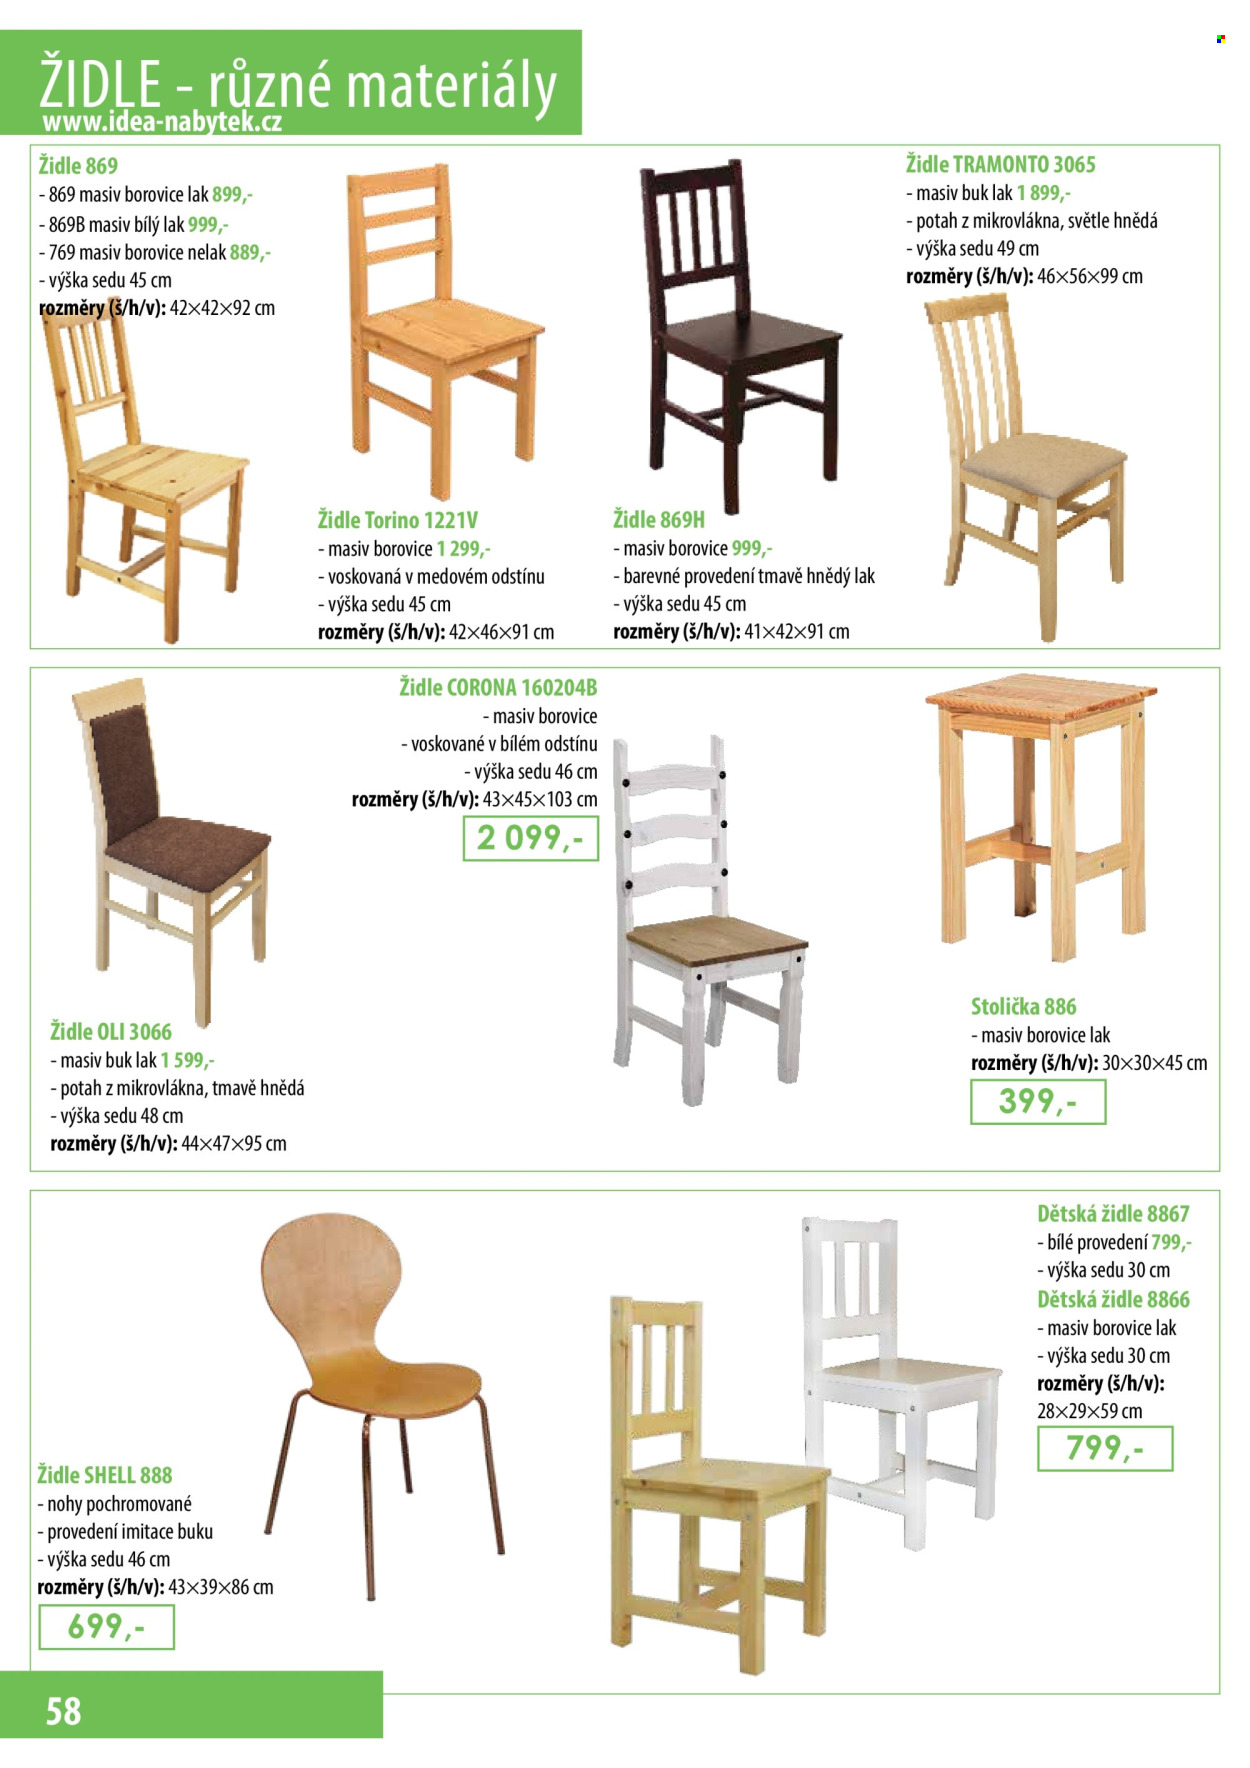 thumbnail - Leták IDEA nábytek - Produkty v akci - stolička, židle, dětská židle. Strana 58.